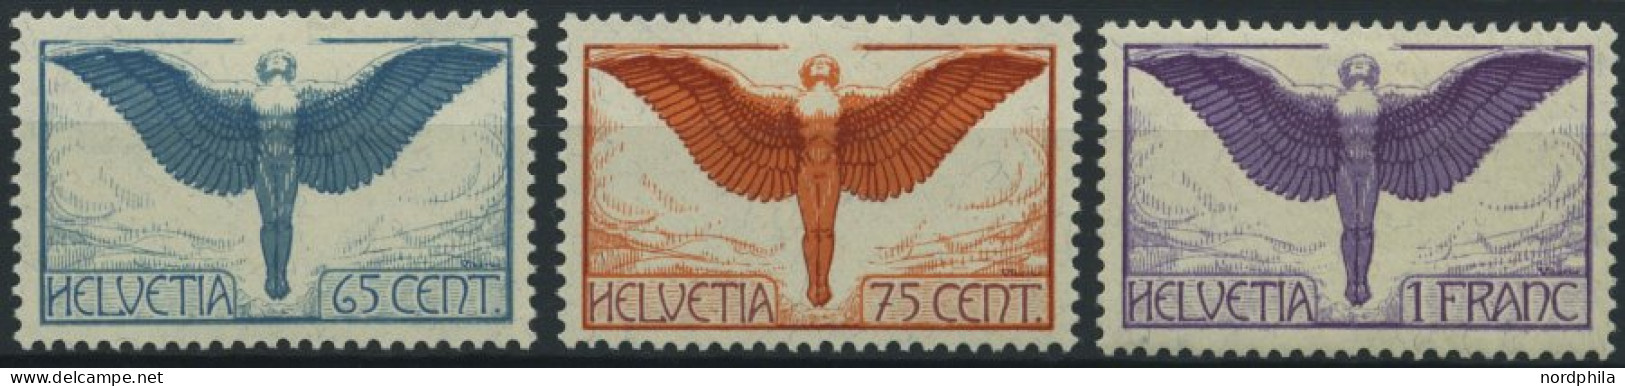 SCHWEIZ BUNDESPOST 189-91x , 1924, Flugpostmarken, Gewöhnliches Papier, Falzrest, Prachtsatz - Neufs